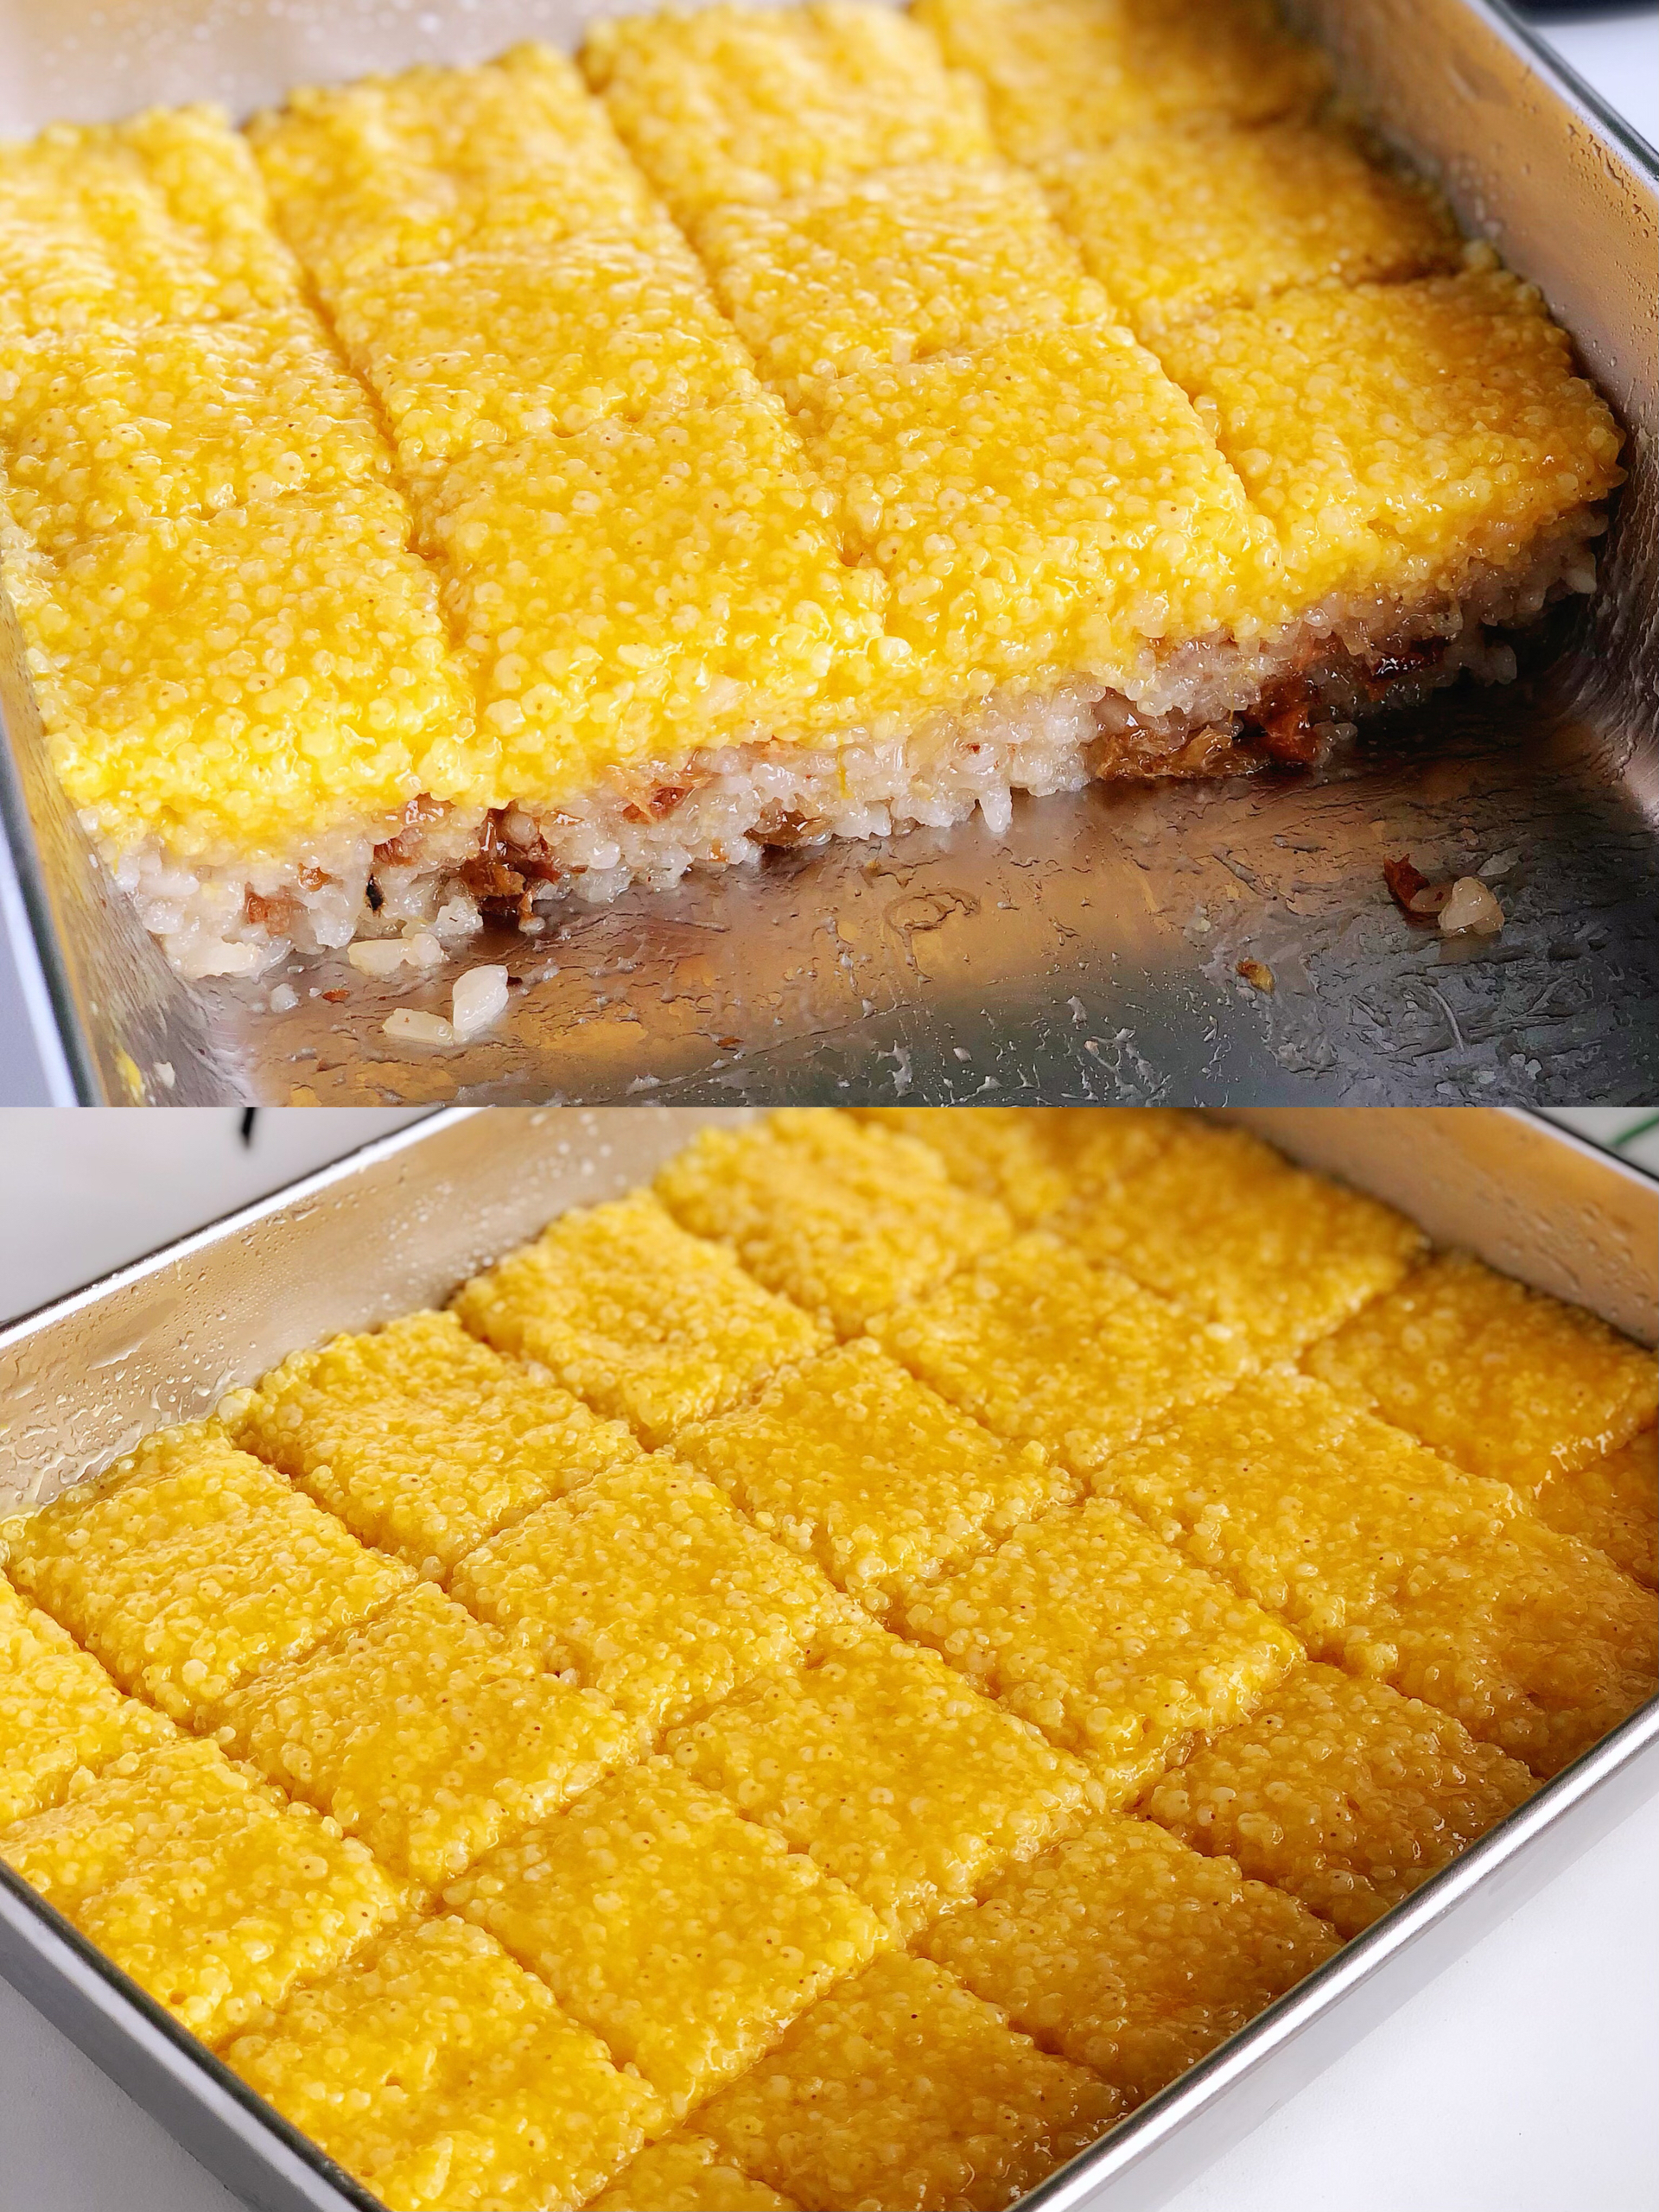 糯叽叽的黄米凉糕零失败做法，配方用量精准黏黏糯糯不甜腻，百分百还原的做法